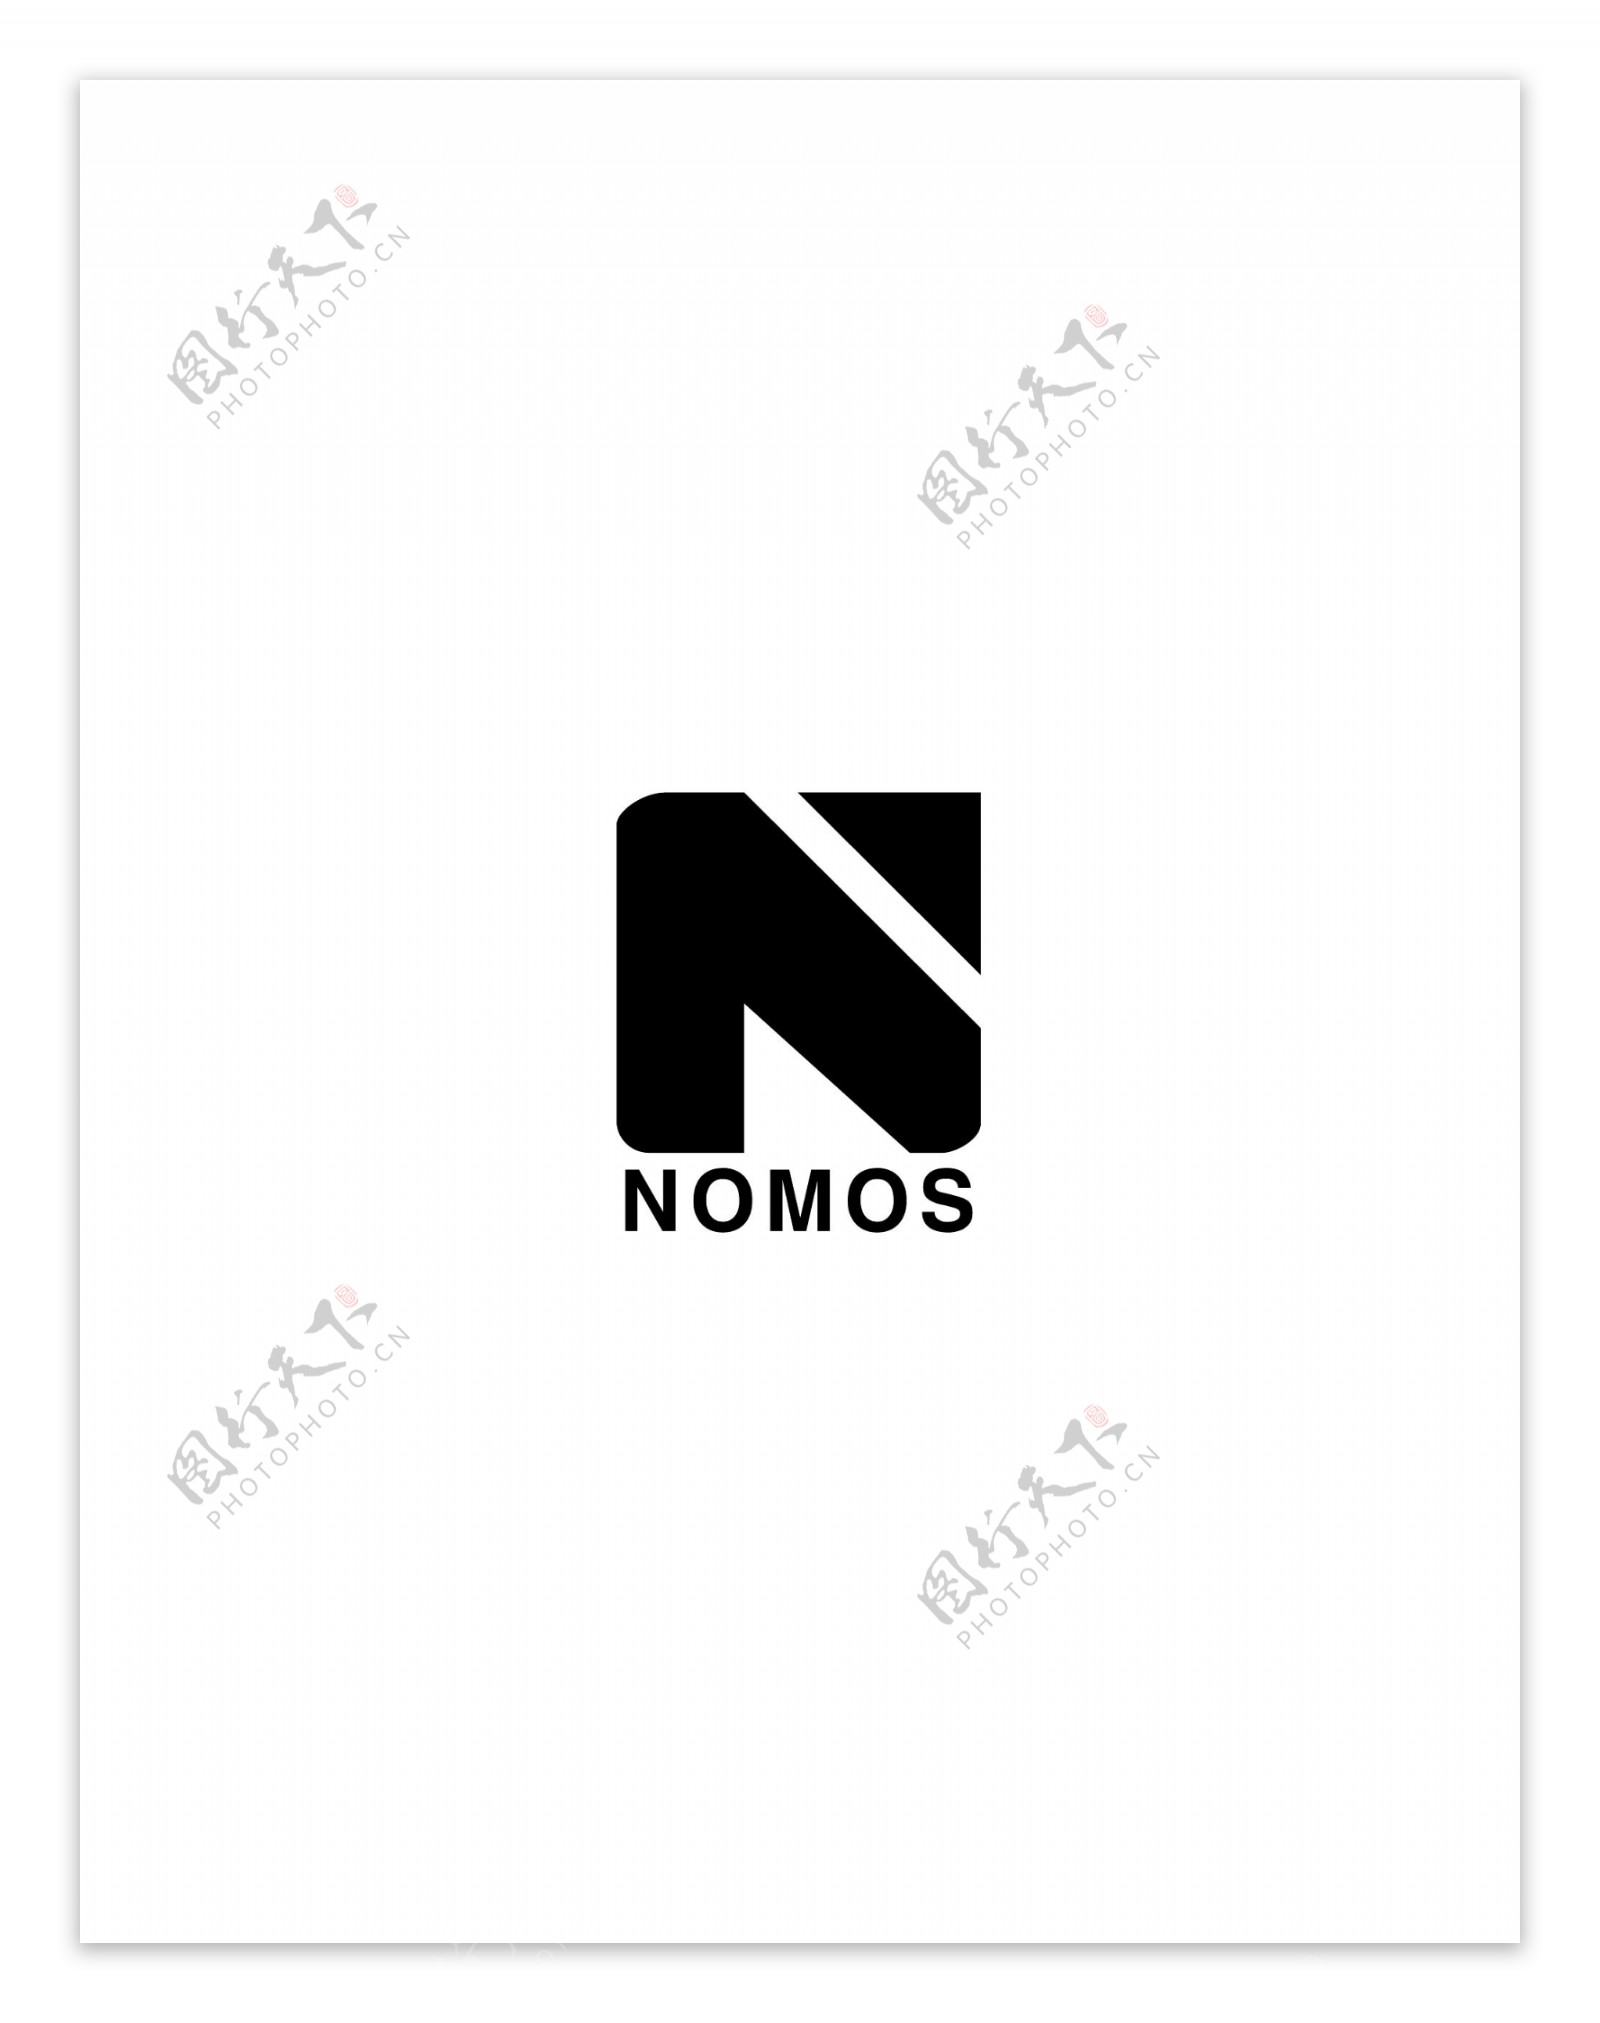 Nomoslogo设计欣赏Nomos下载标志设计欣赏